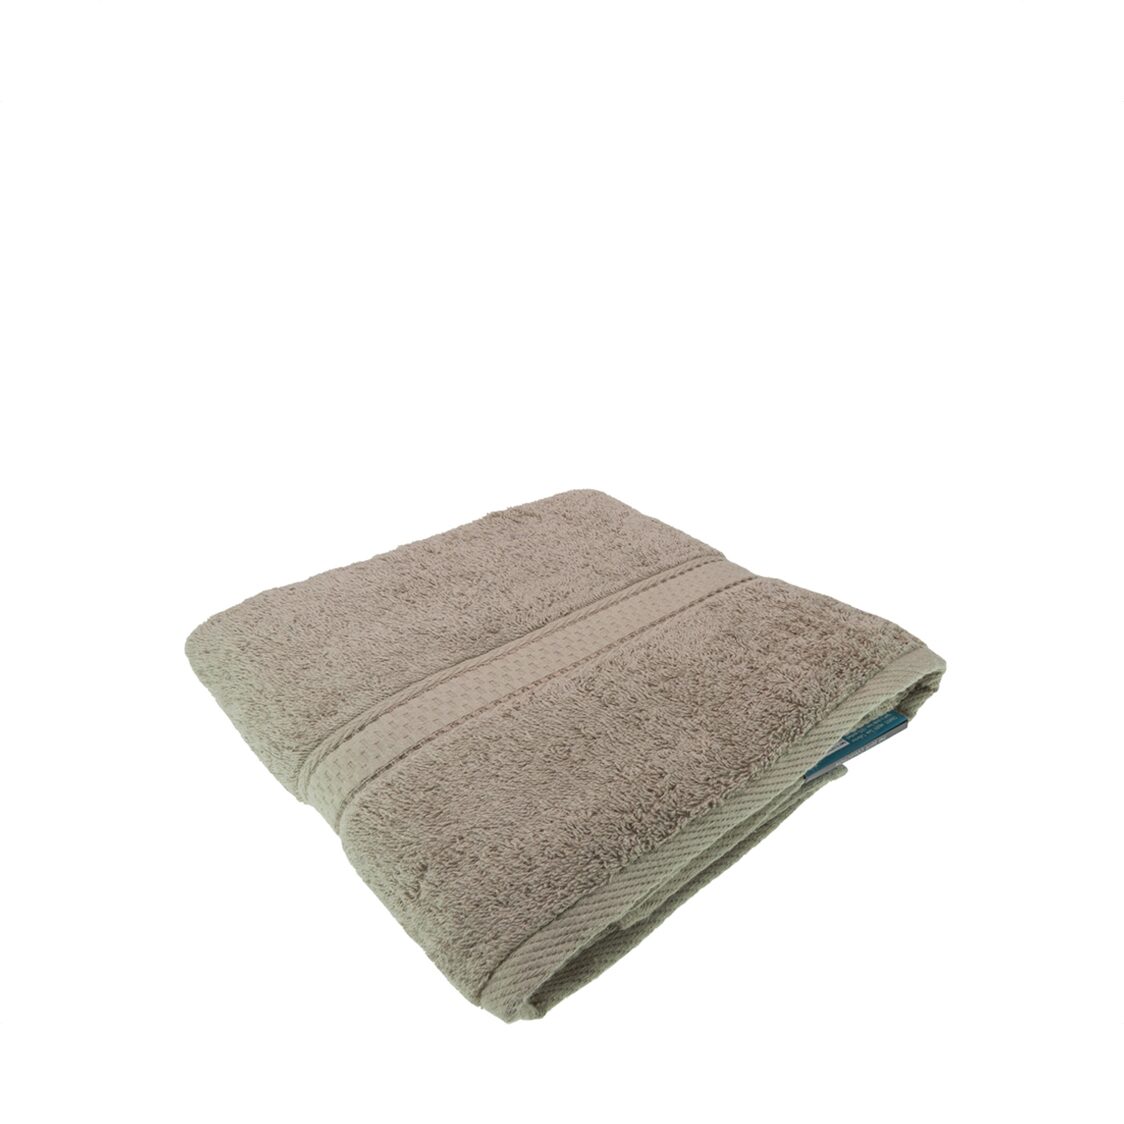 Charles Millen Suite Collection CT108 Classique Bath Towel Mocca